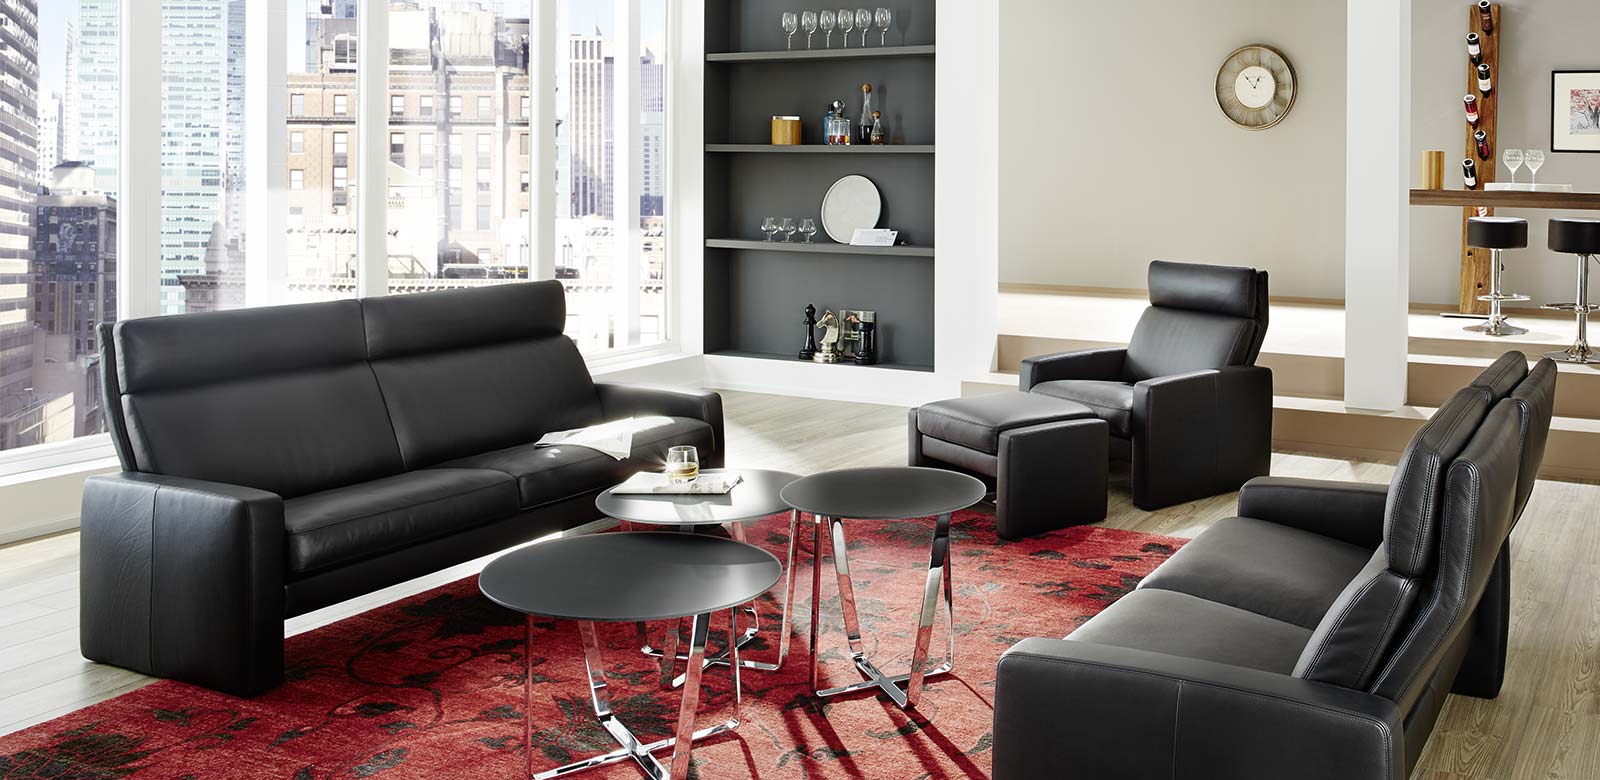 Arosa Couch mit Sessel und Hocker in schwarzem Leder, schwarzen runden Beistelltischen und rotem Teppich.